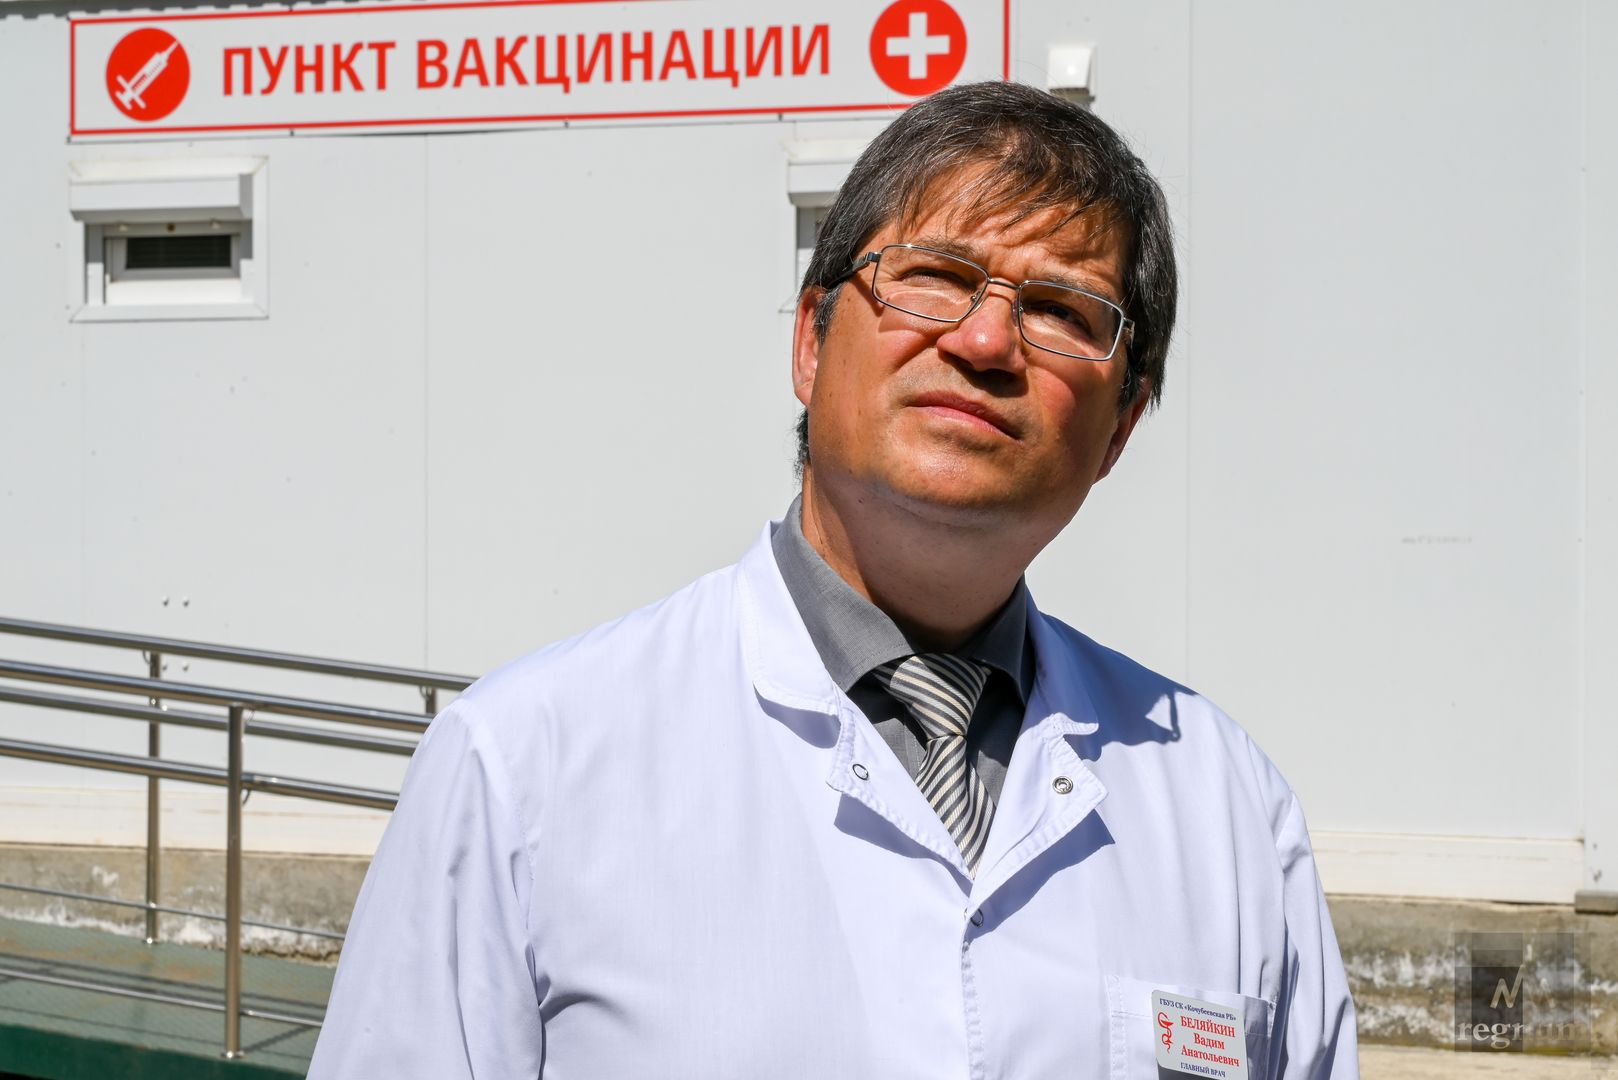 Вадим Беляйкин, главный врач ГБУЗ СК «Кочубеевская районная больница»